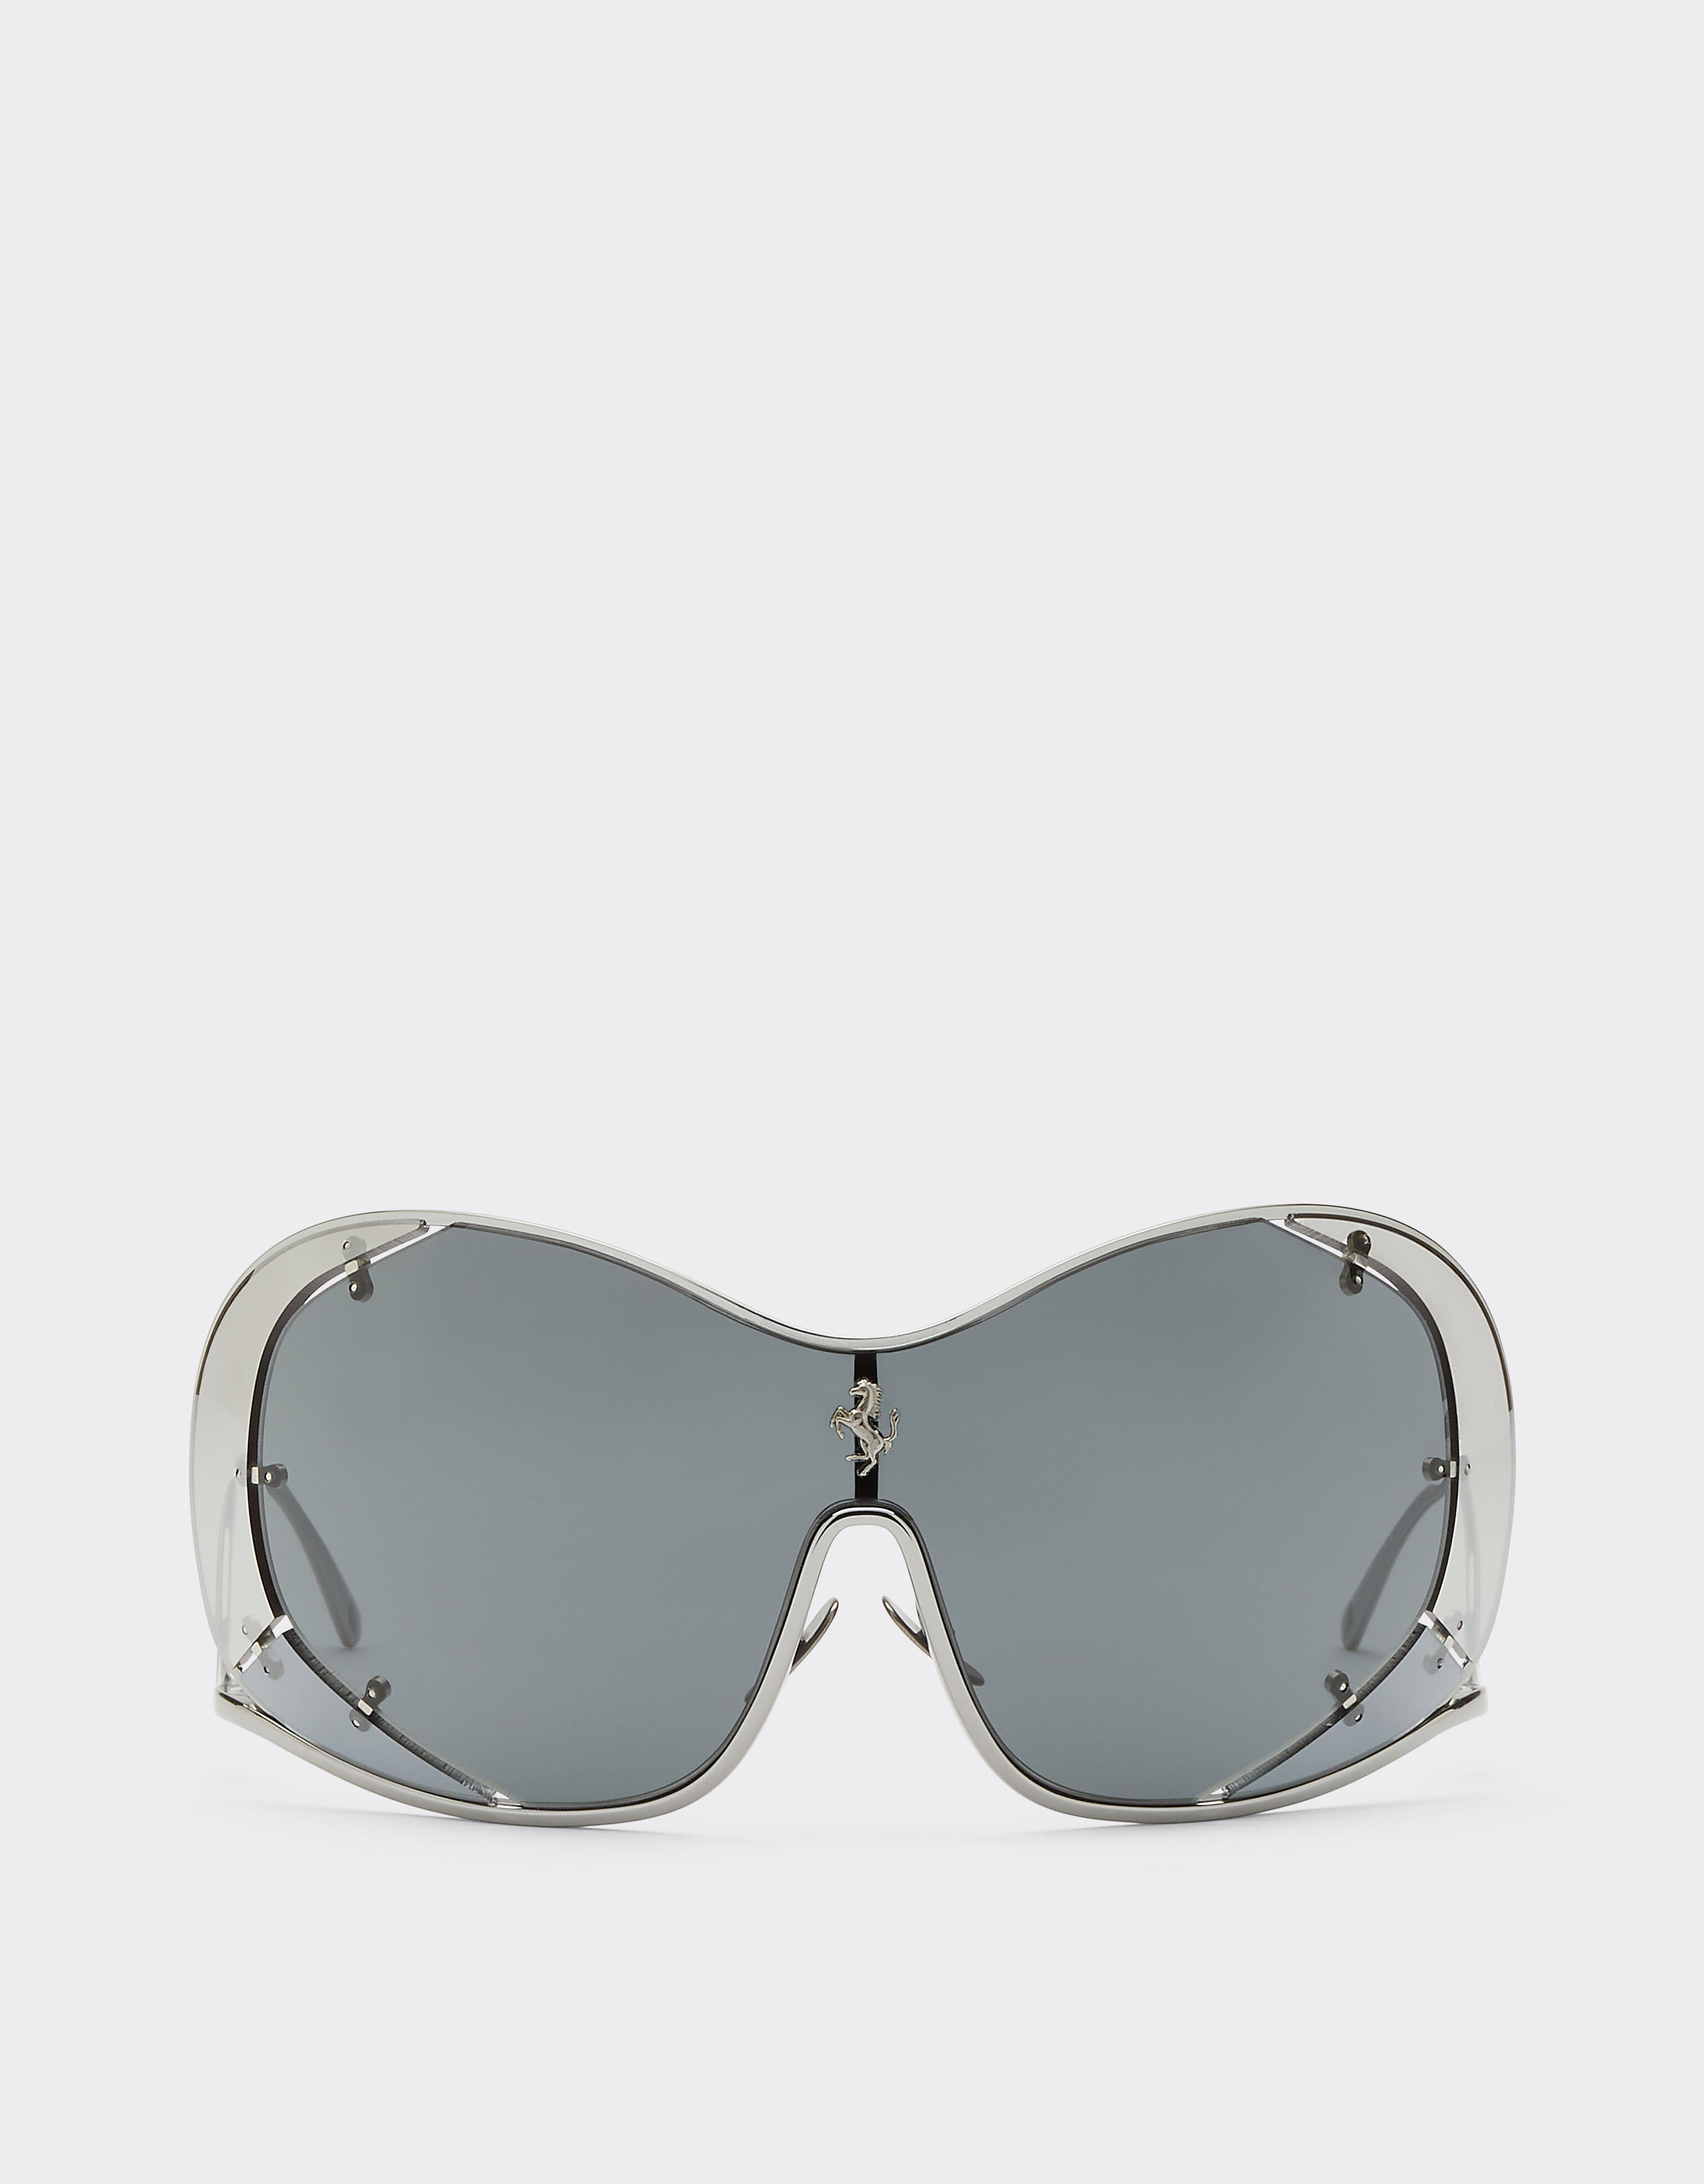 Ferrari Ferrari sunglasses with grey lenses Silver F1247f